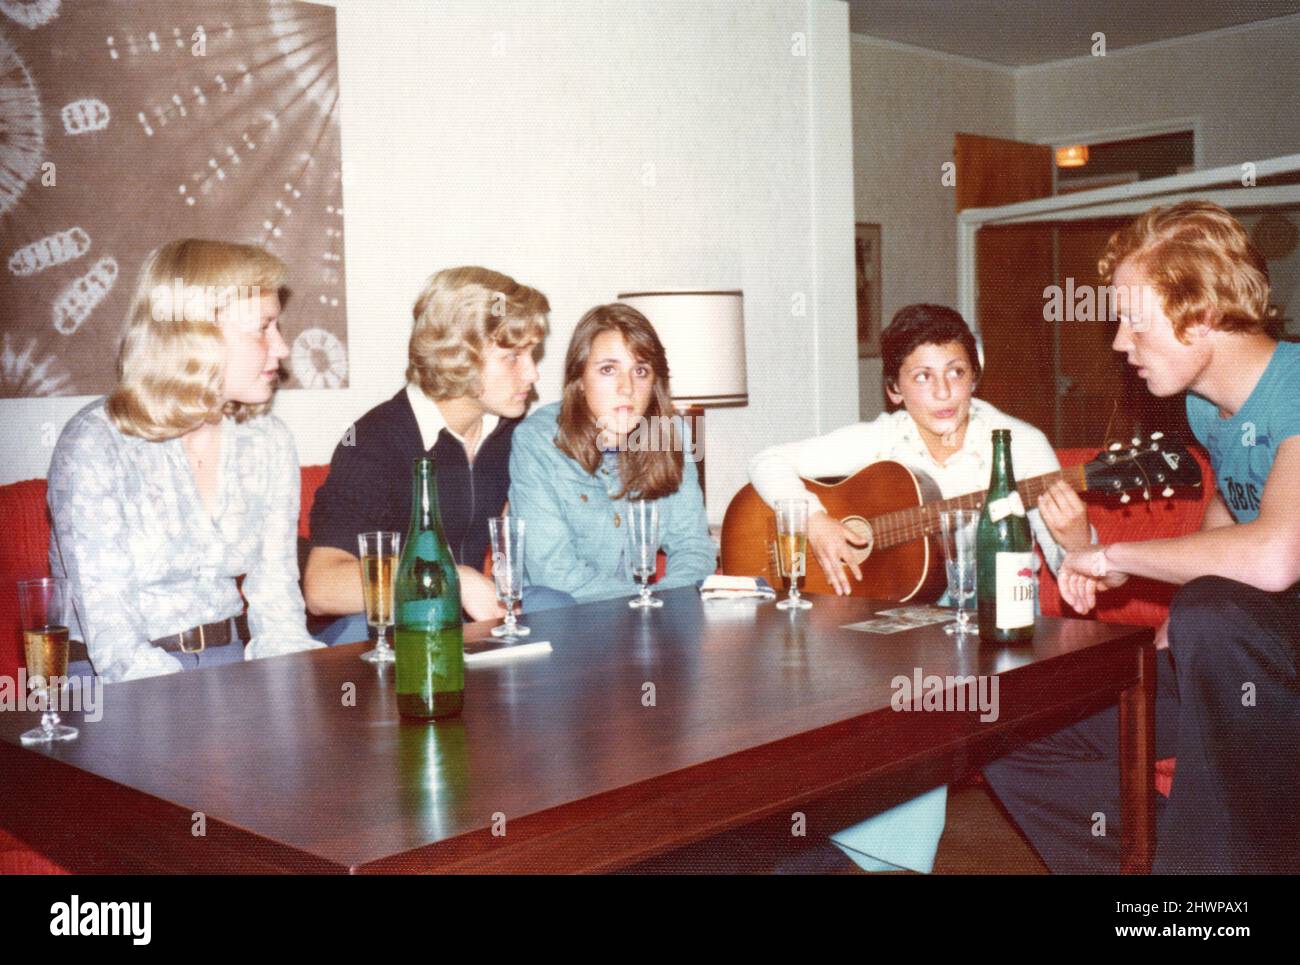 Fotografía original de los años 70 del grupo de adolescentes suecos hablando, bebiendo y tocando la guitarra, Suecia. Concepto de amistad, unión, nostalgia Foto de stock